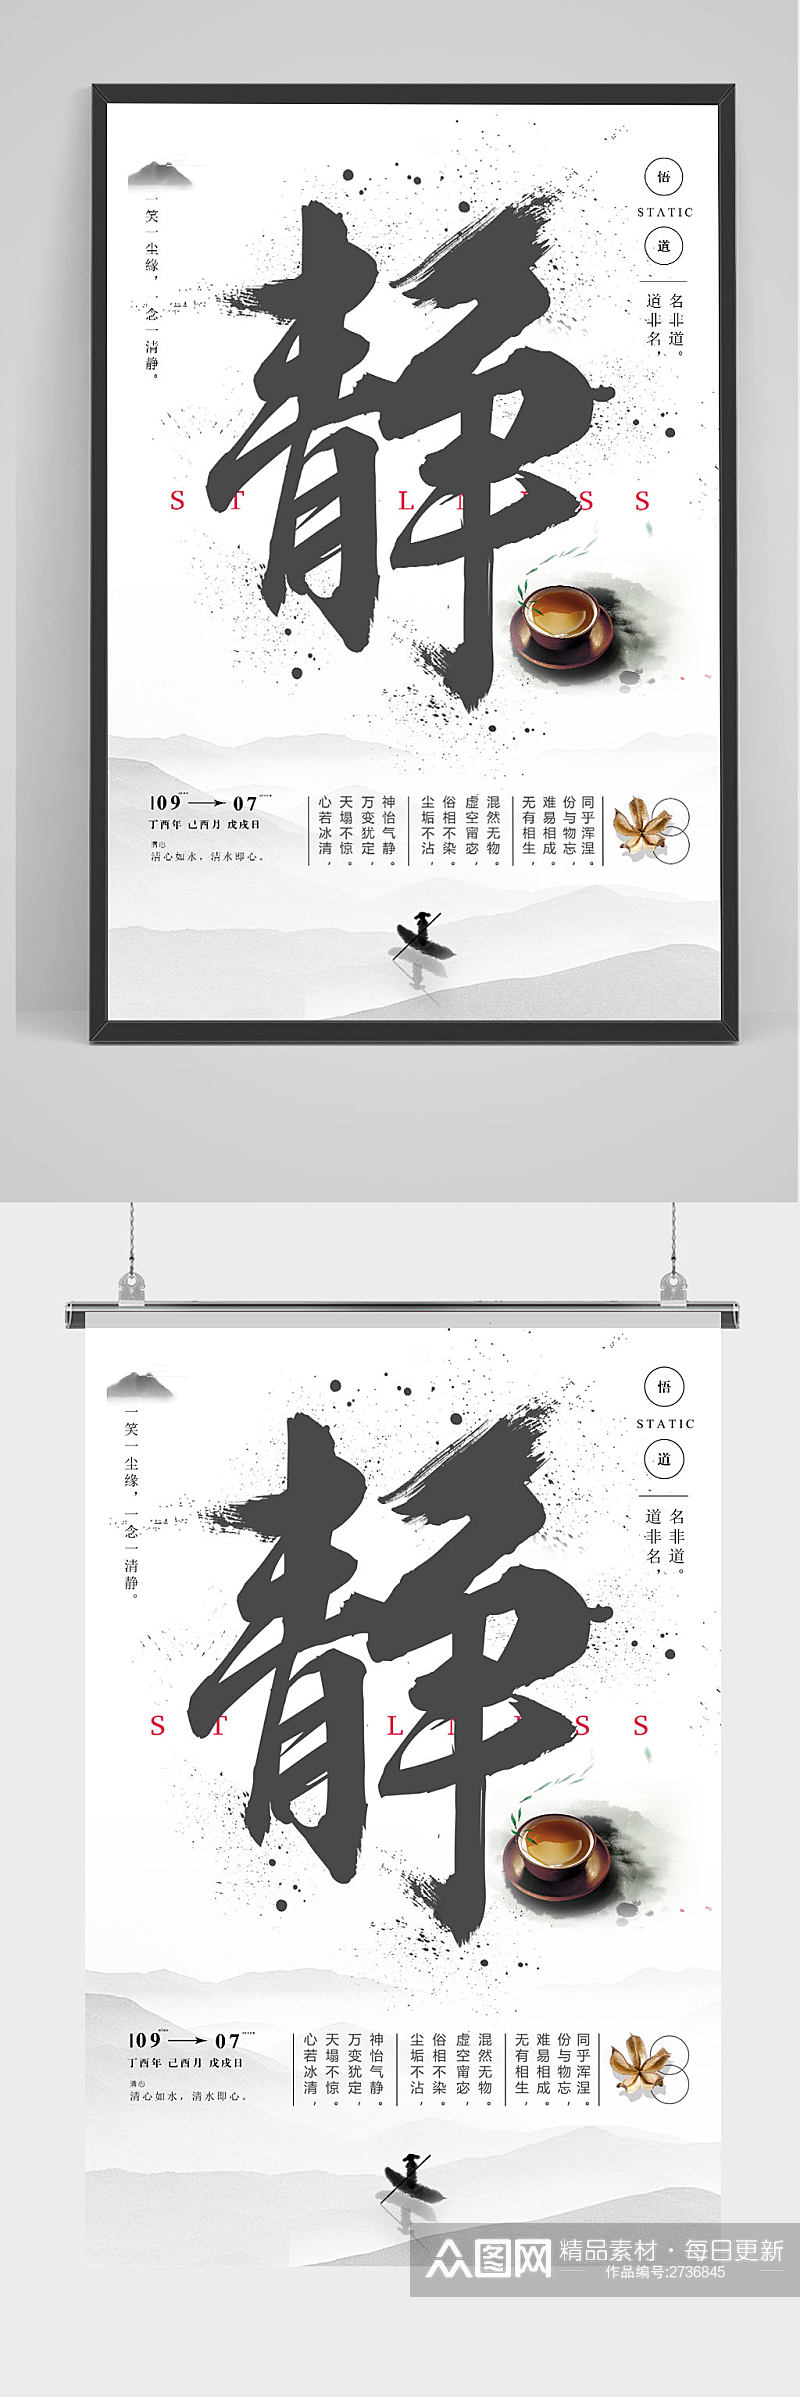 中国风水墨静心企业文化创意海报素材